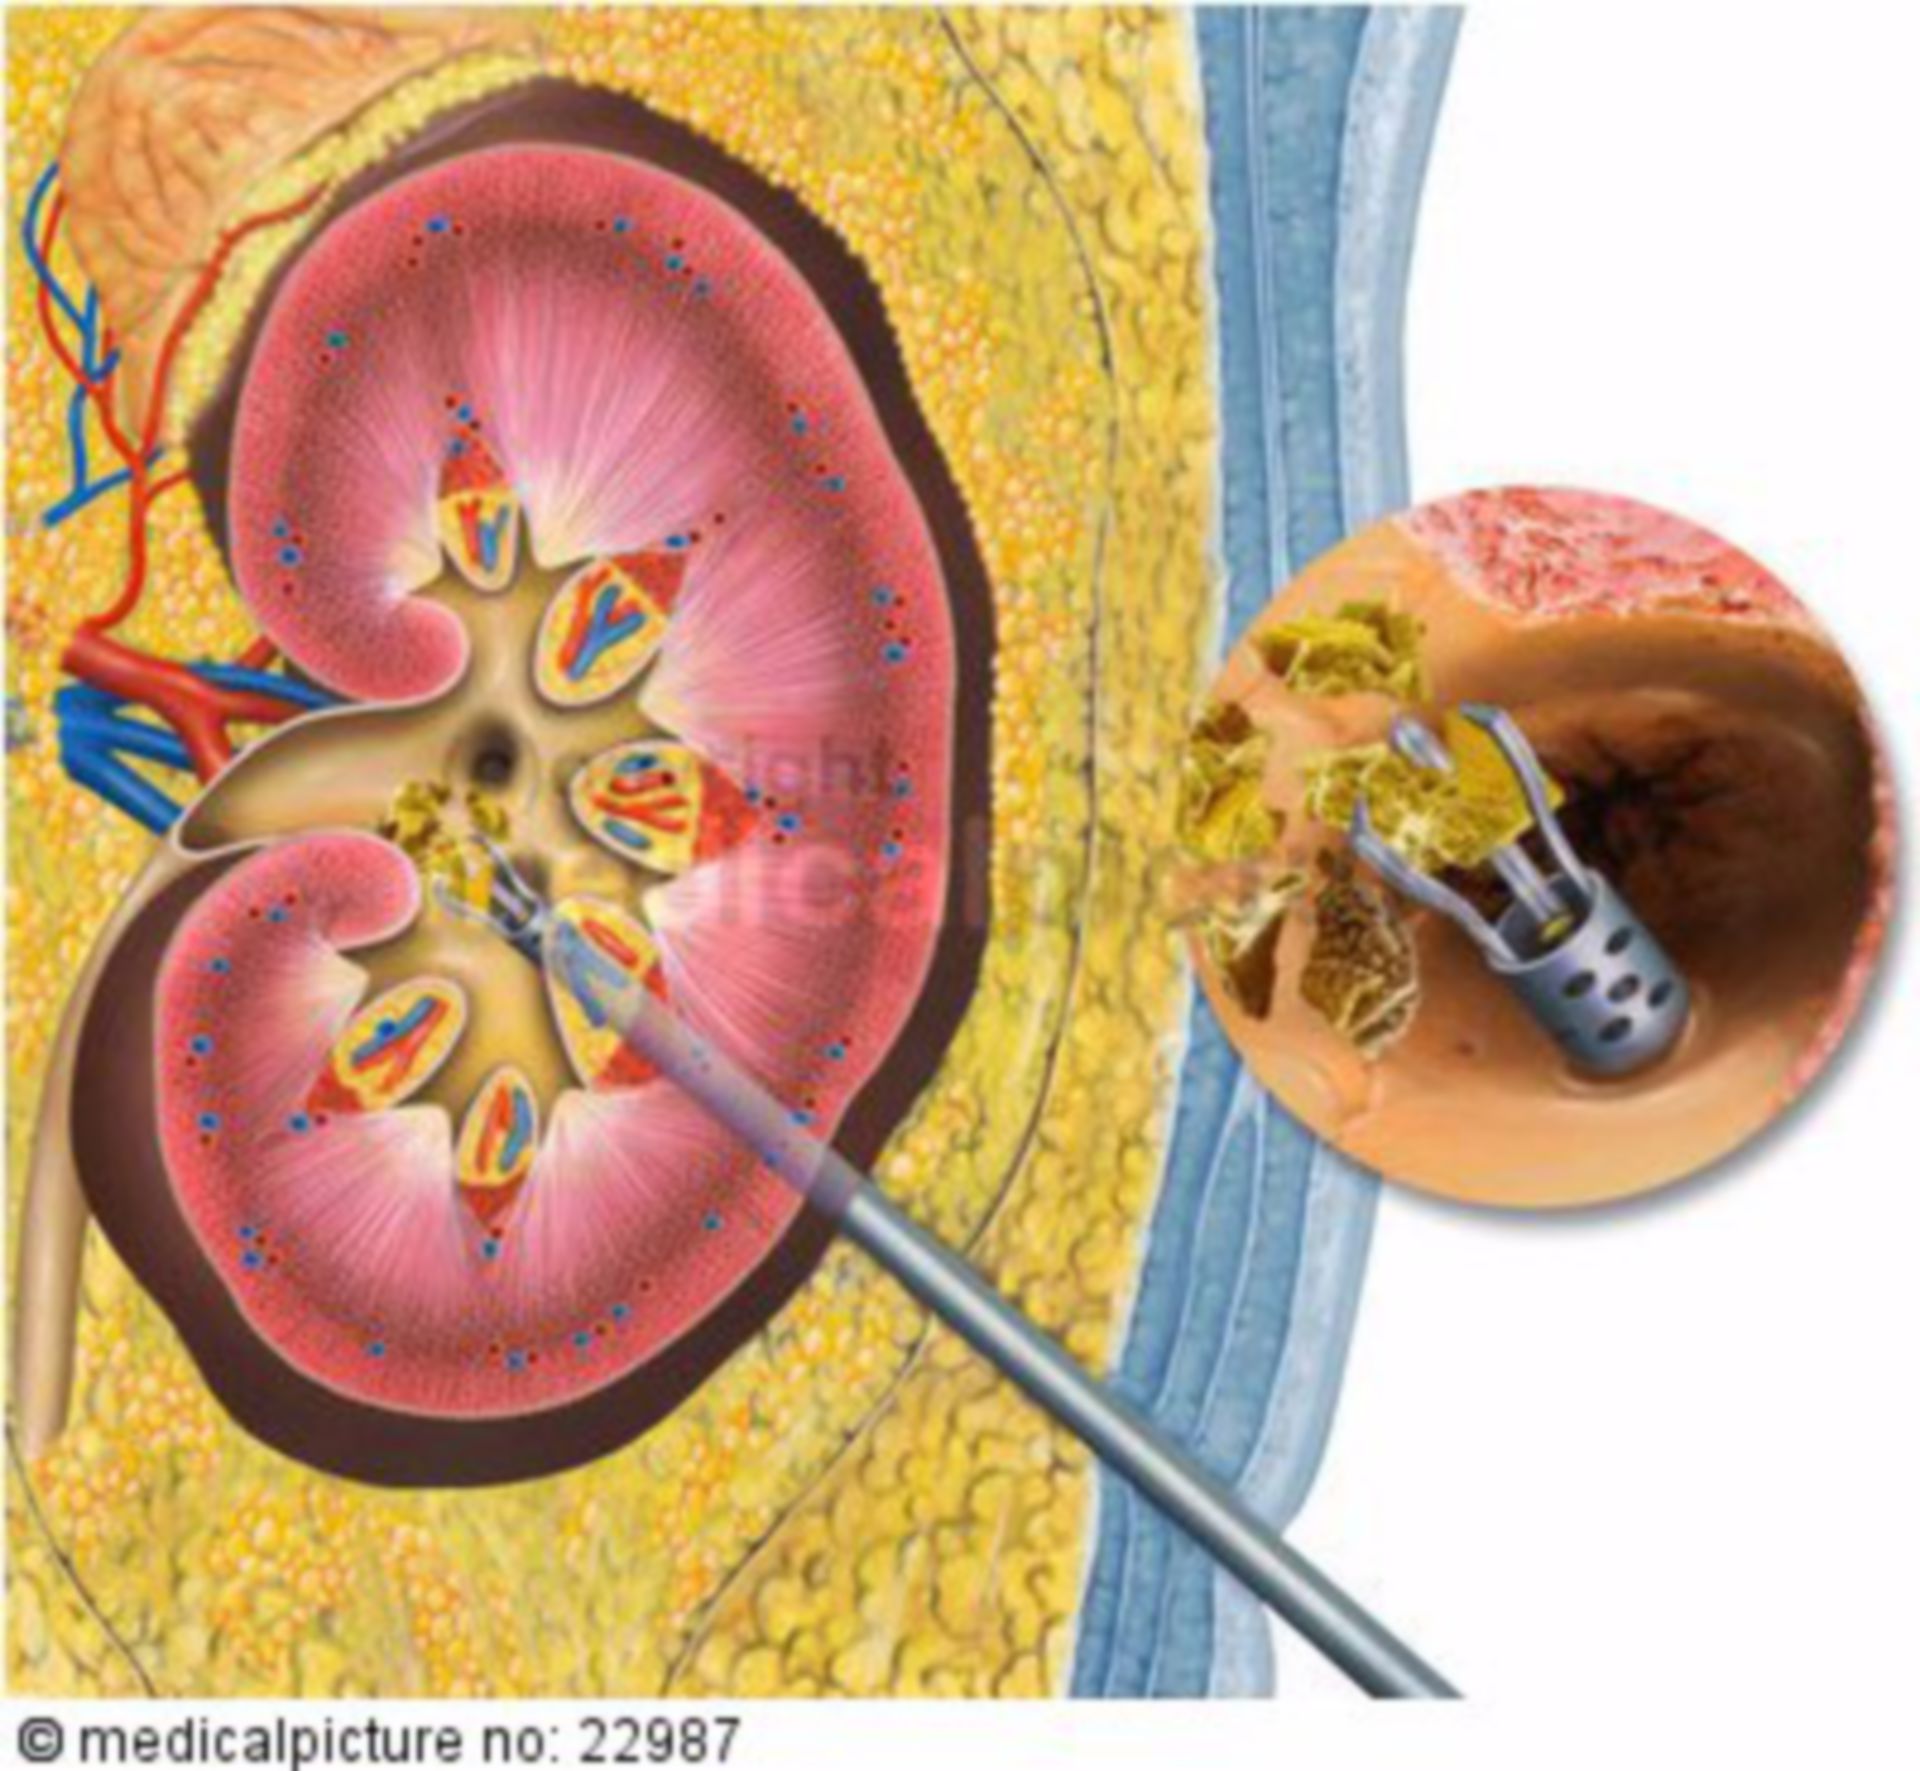 Kidney Stone Biopsy with Kidney Stone Disease, Kidney - DocCheck